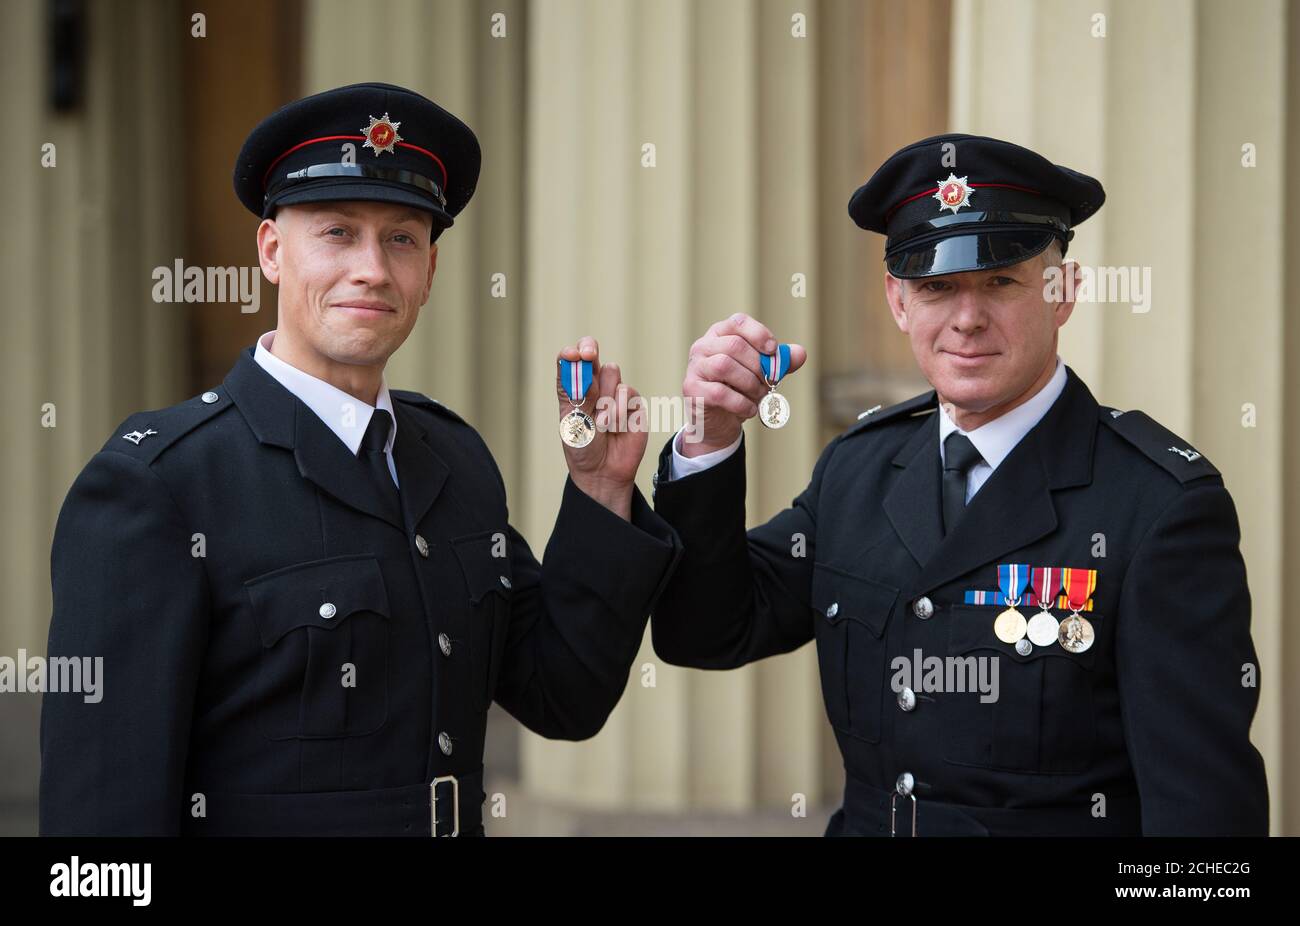 Les pompiers Wayne Ansell (à gauche) et Simon Best après avoir reçu la Médaille de la galanterie de la Reine lors d'une cérémonie d'investiture à Buckingham Palace, Londres. Banque D'Images